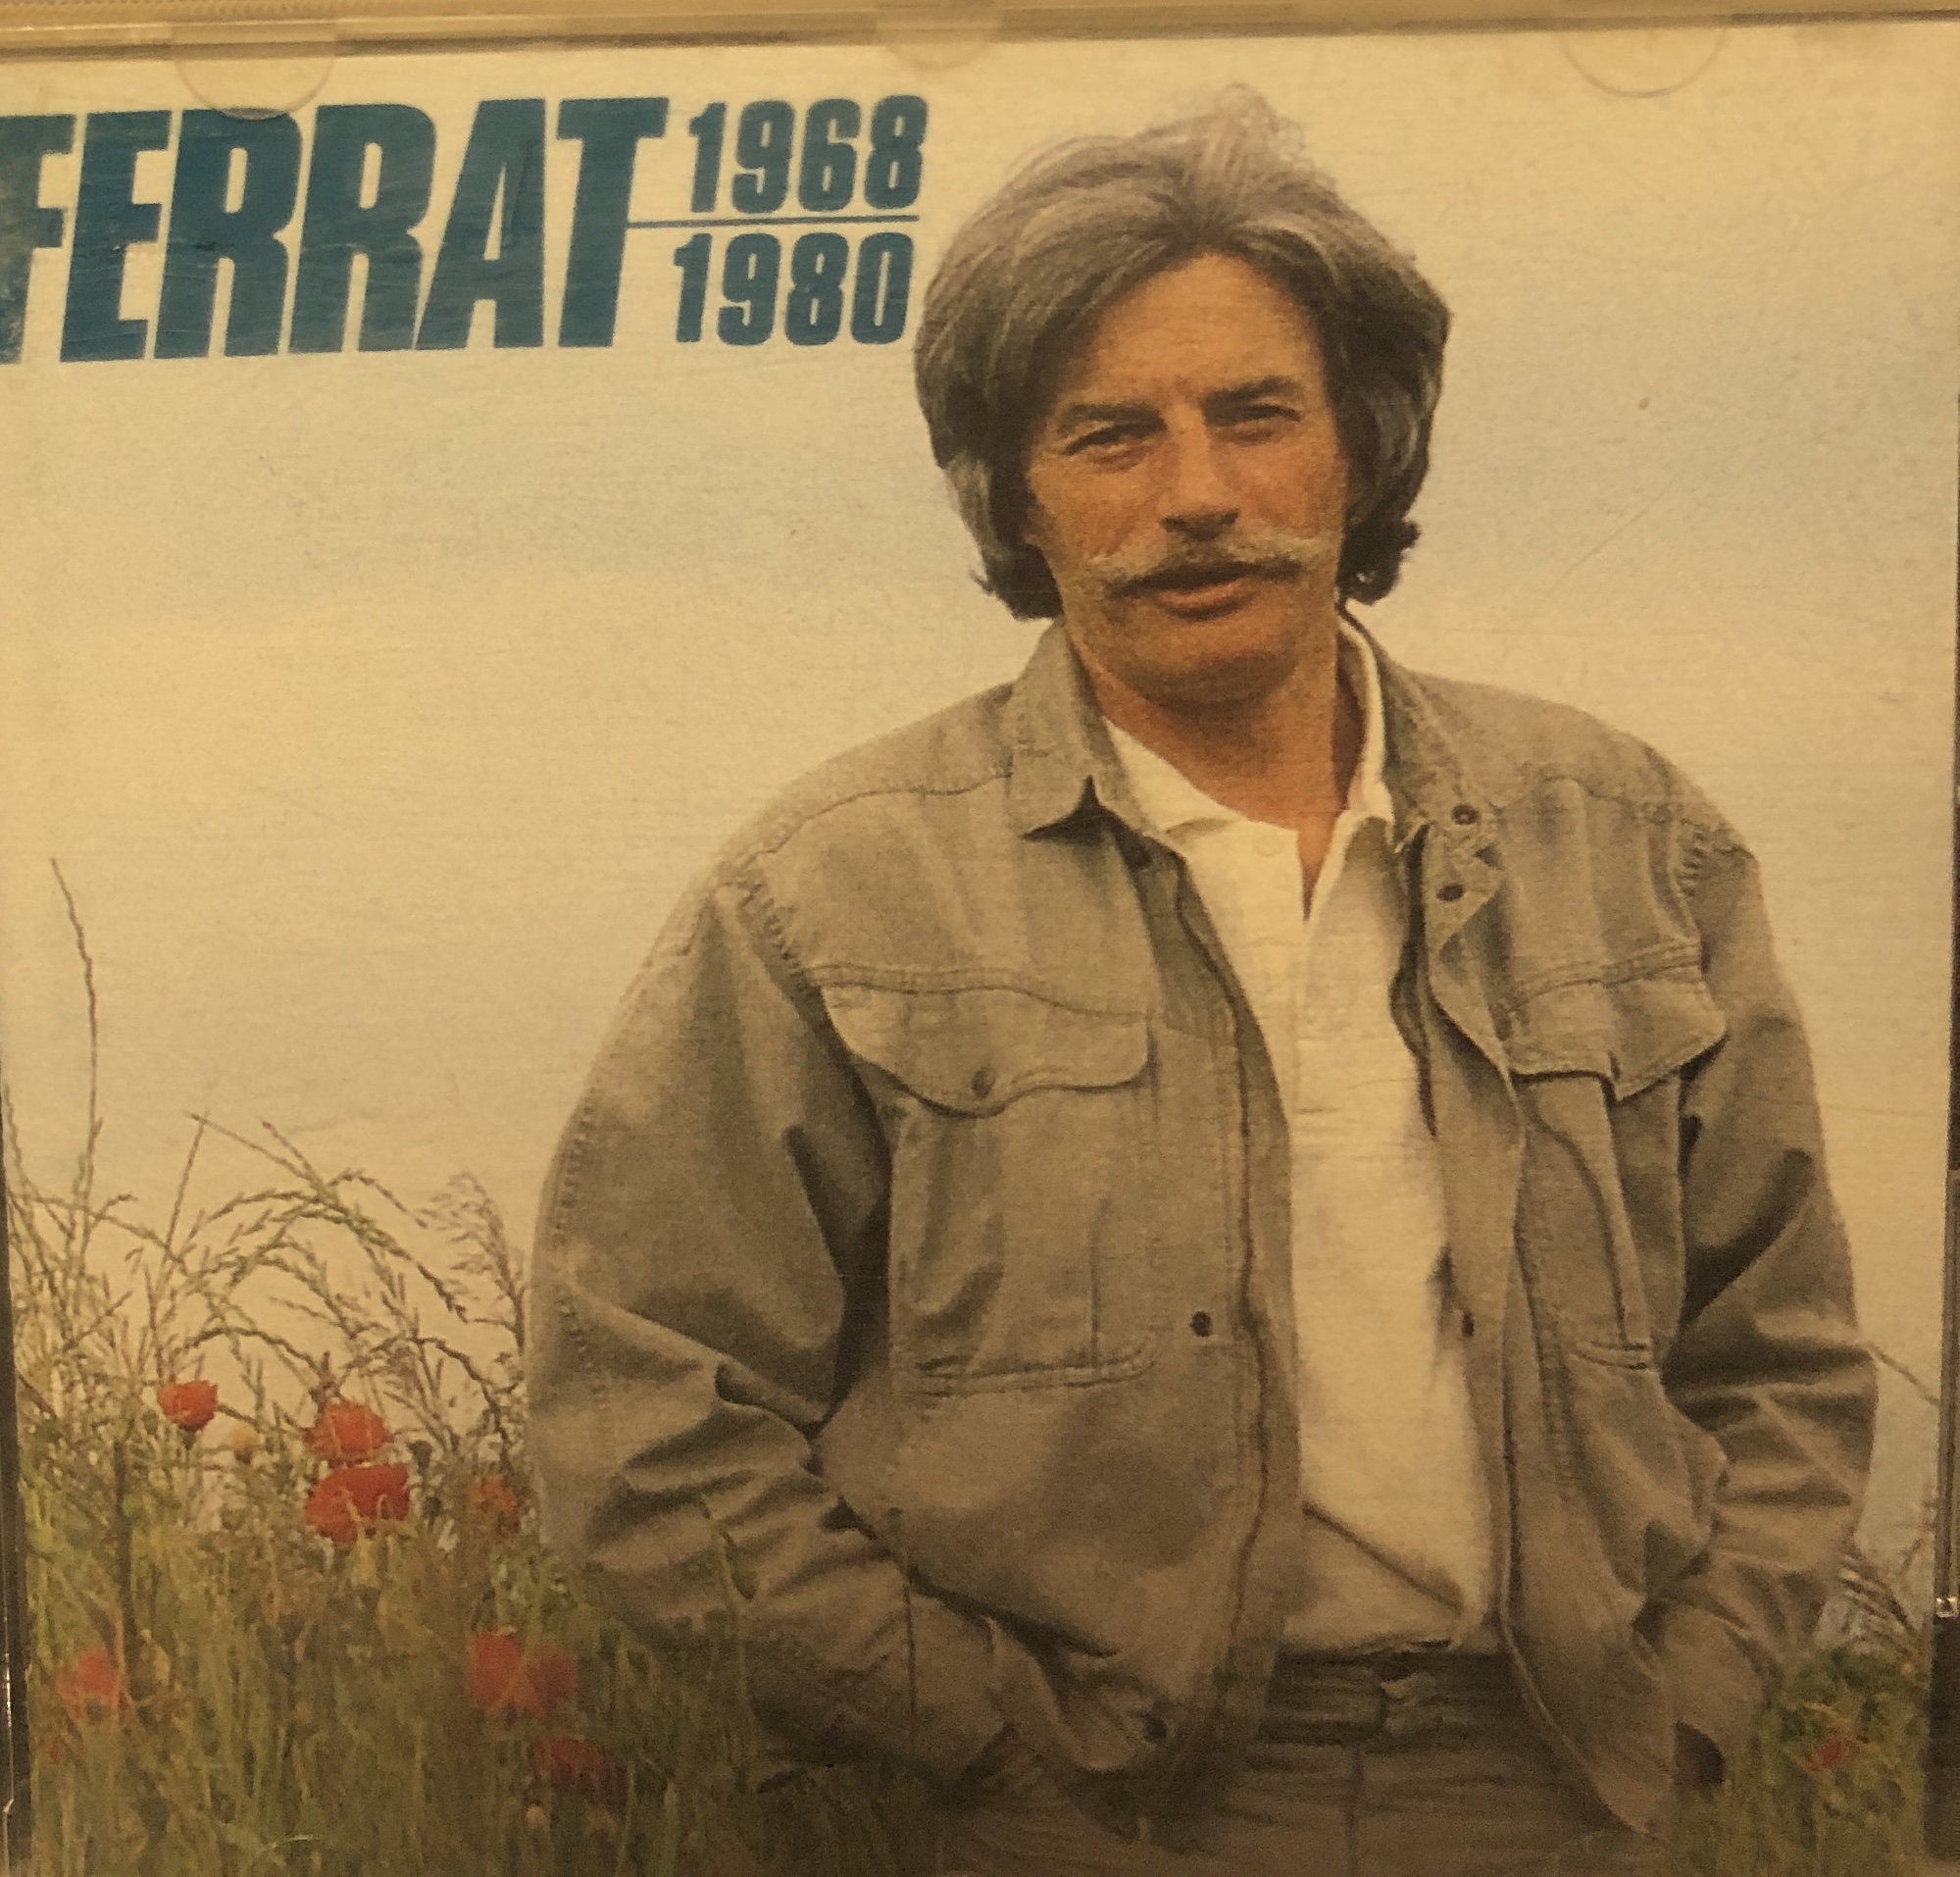 Ferrat 1968-1980 / Jean Ferrat | Ferrat, Jean (1930-2010) - écrivain, musicien et chanteur français. Interprète